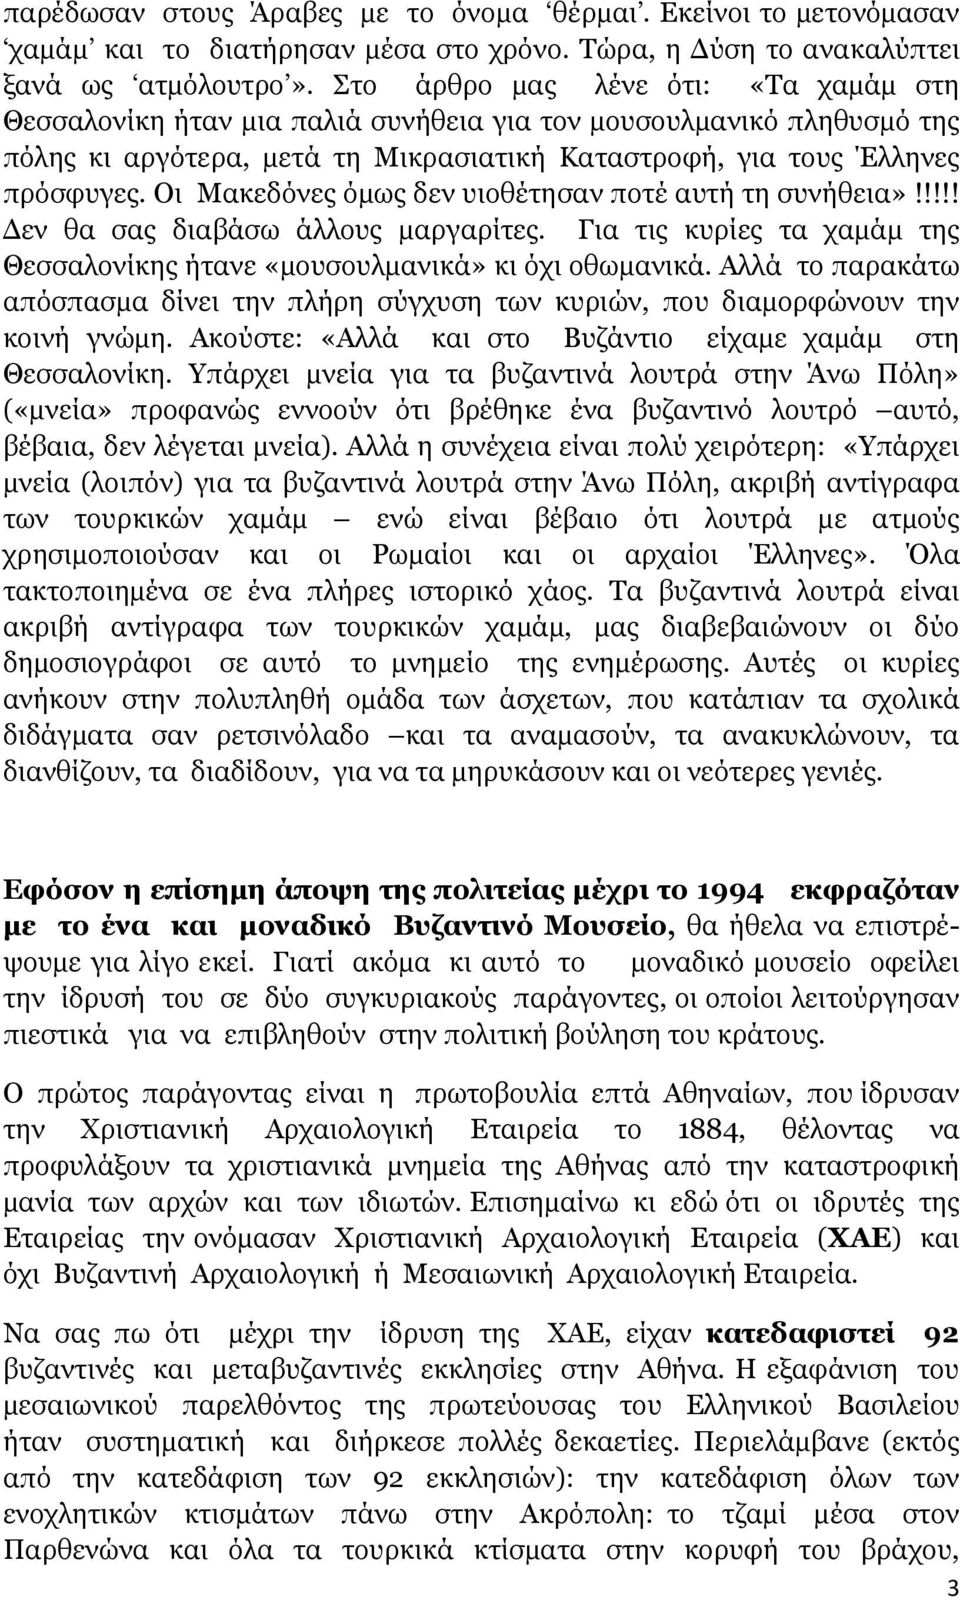 Οι Μακεδόνες όµως δεν υιοθέτησαν ποτέ αυτή τη συνήθεια»!!!!! εν θα σας διαβάσω άλλους µαργαρίτες. Για τις κυρίες τα χαµάµ της Θεσσαλονίκης ήτανε «µουσουλµανικά» κι όχι οθωµανικά.